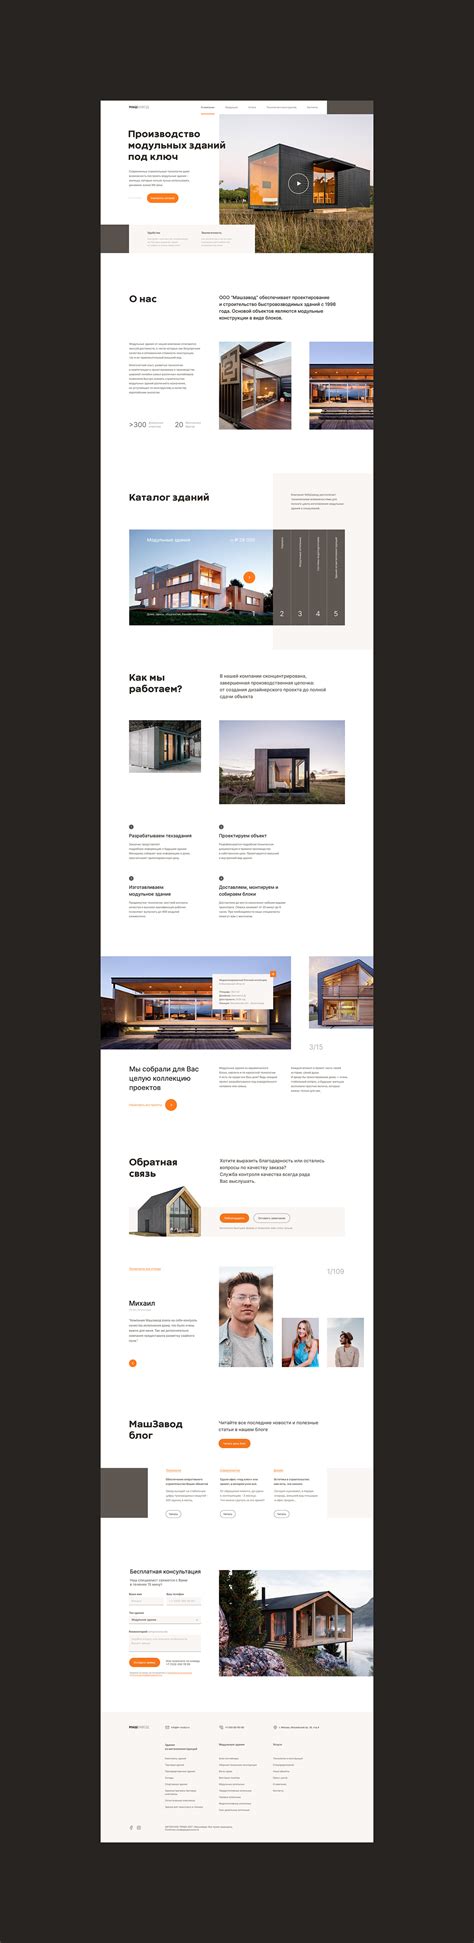 website concept modular houses behance